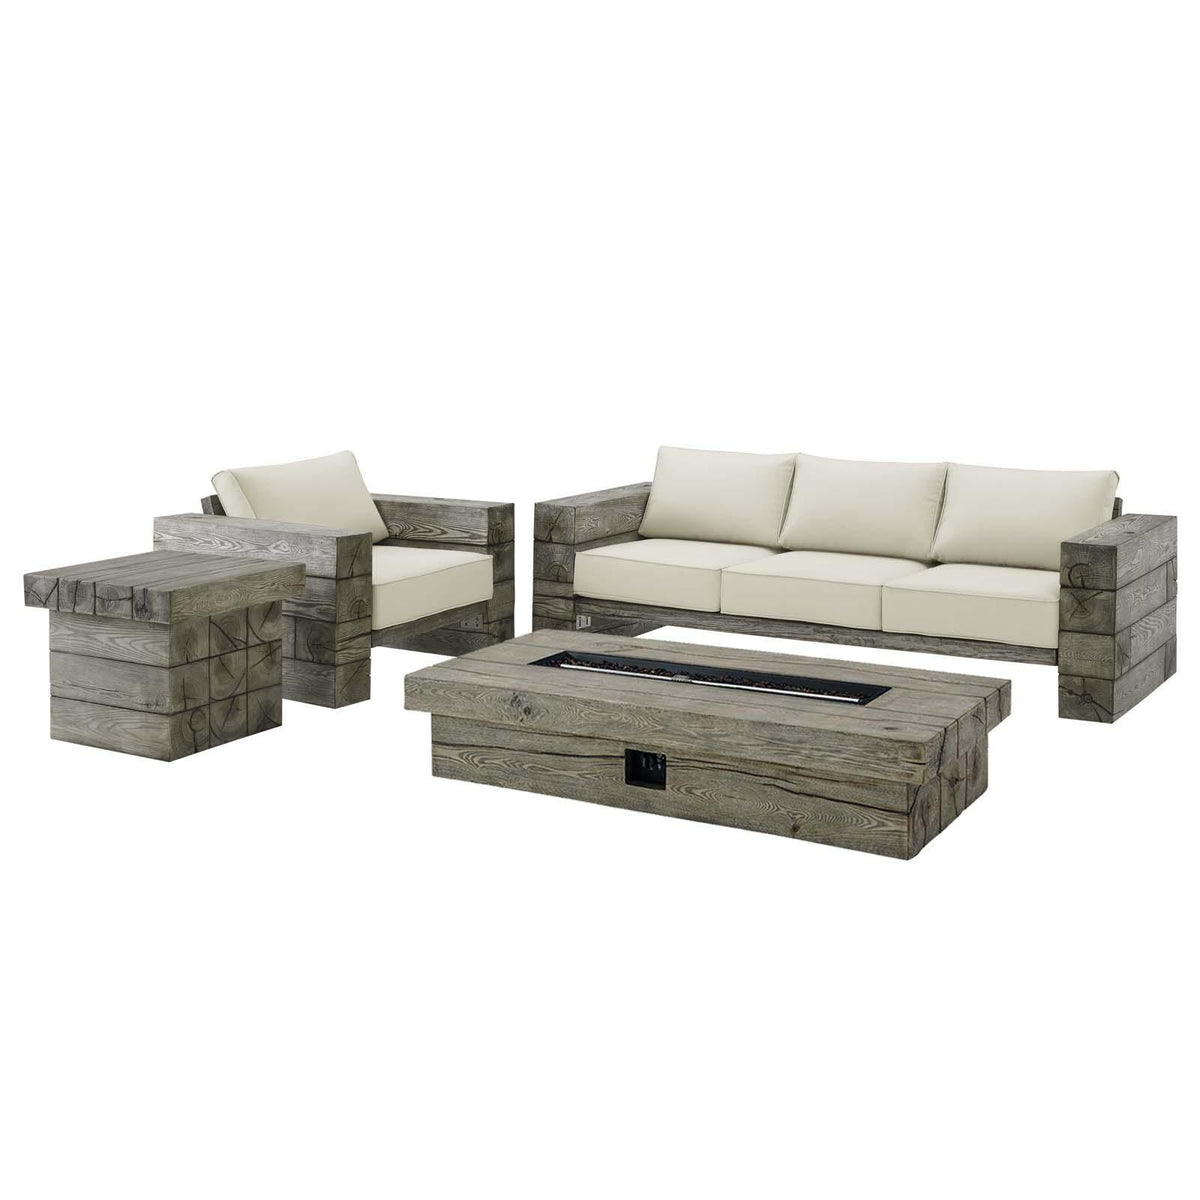 Modway Furniture Modern Manteo Rustic Coastal Outdoor Patio Sunbrella® 4 Piece Set - EEI-4037